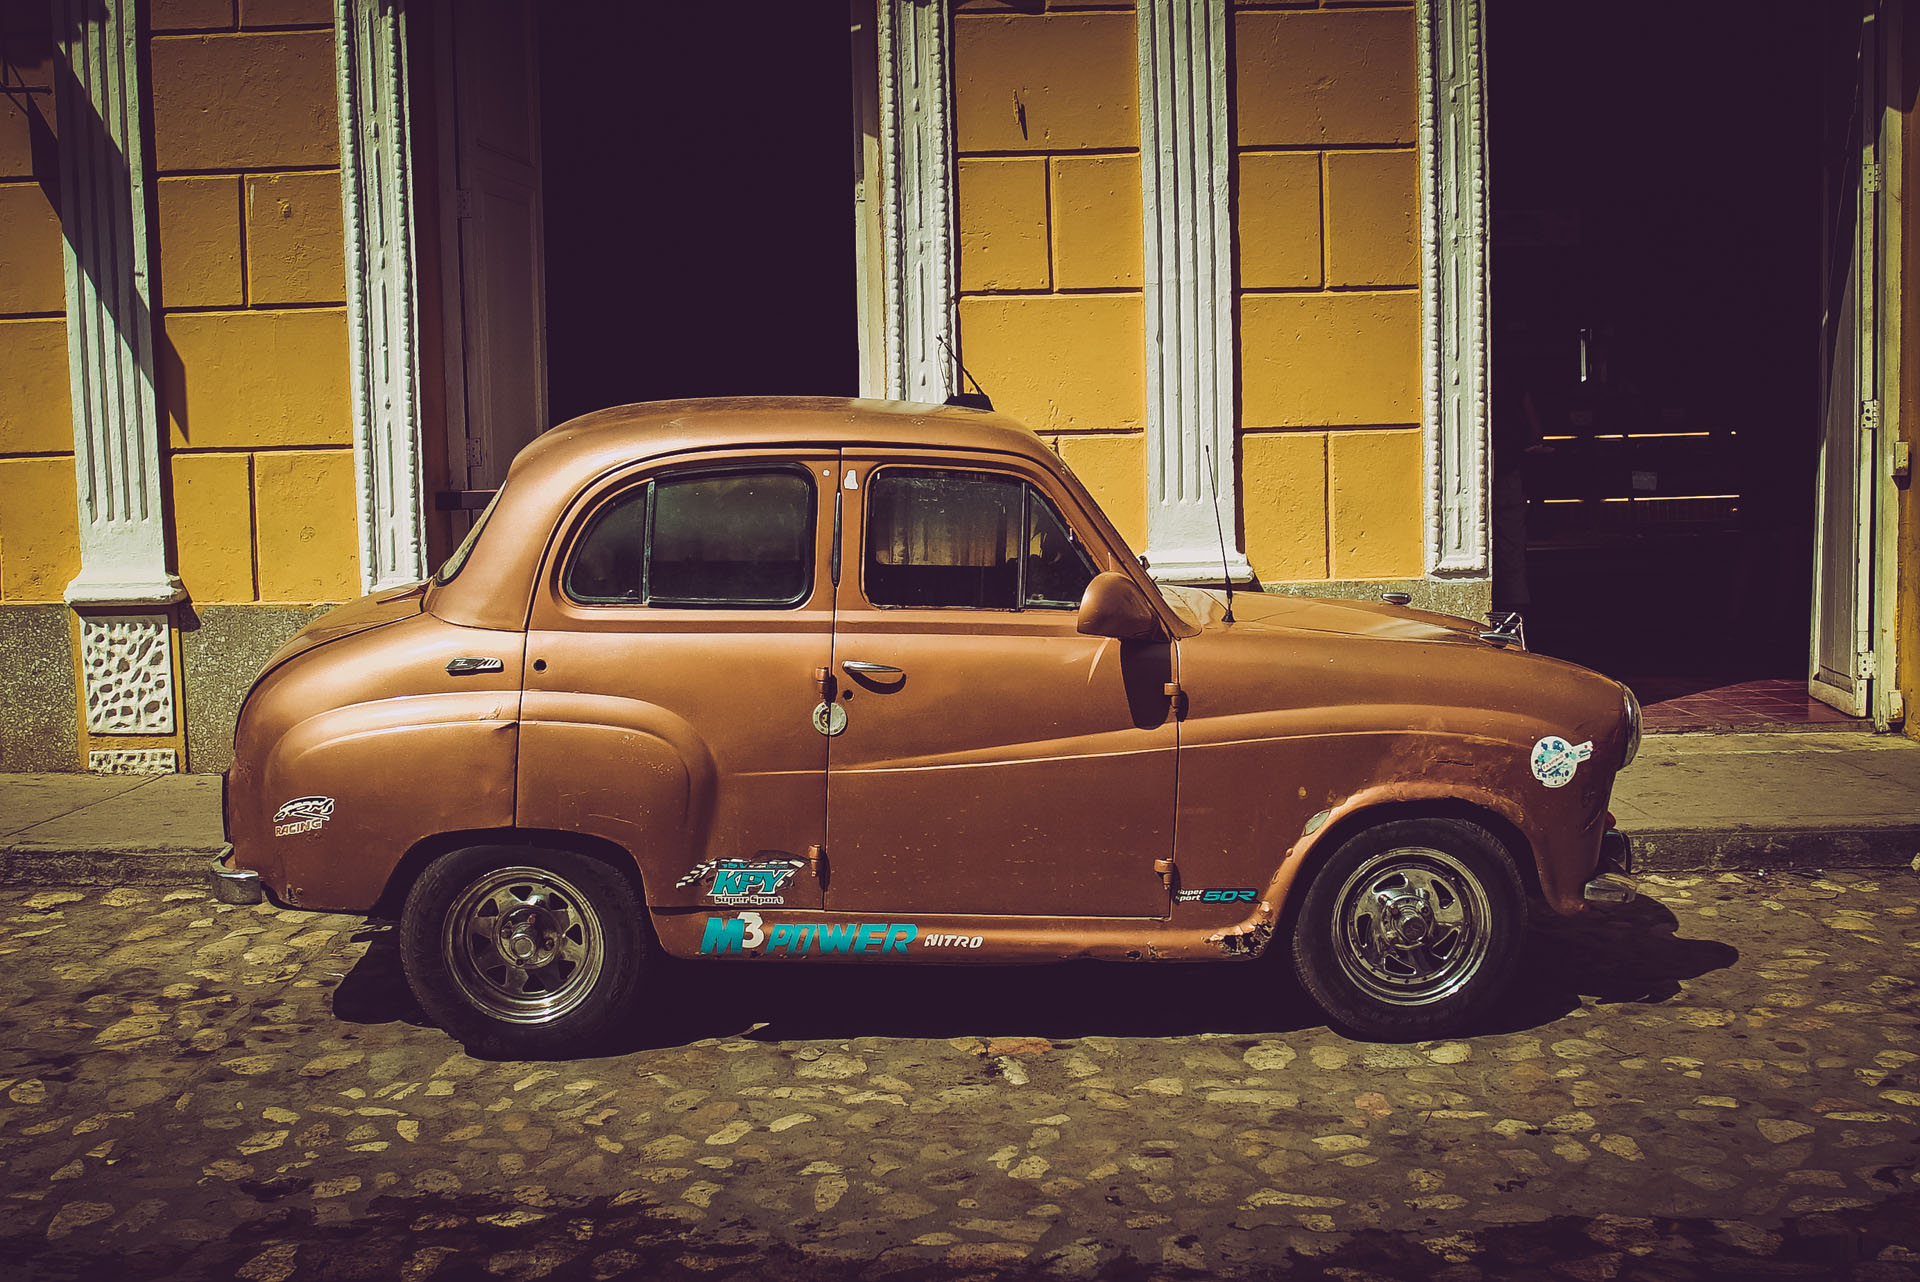 Cars_of_Cuba_00011